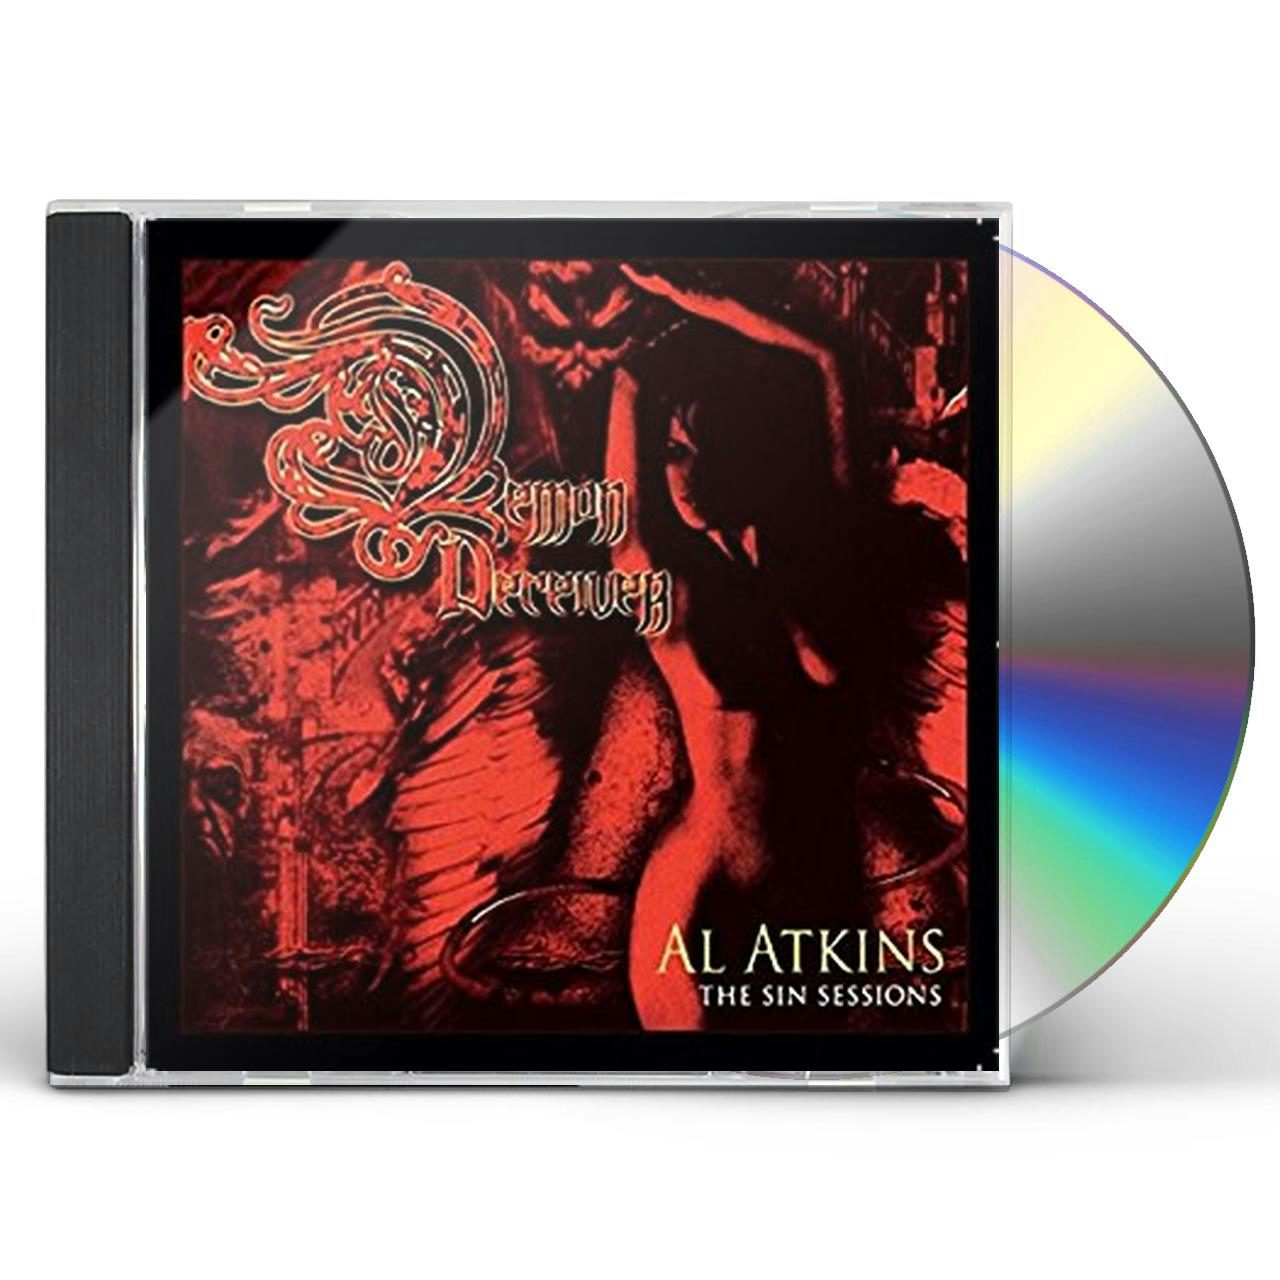 demon deceiver cd - Al Atkins